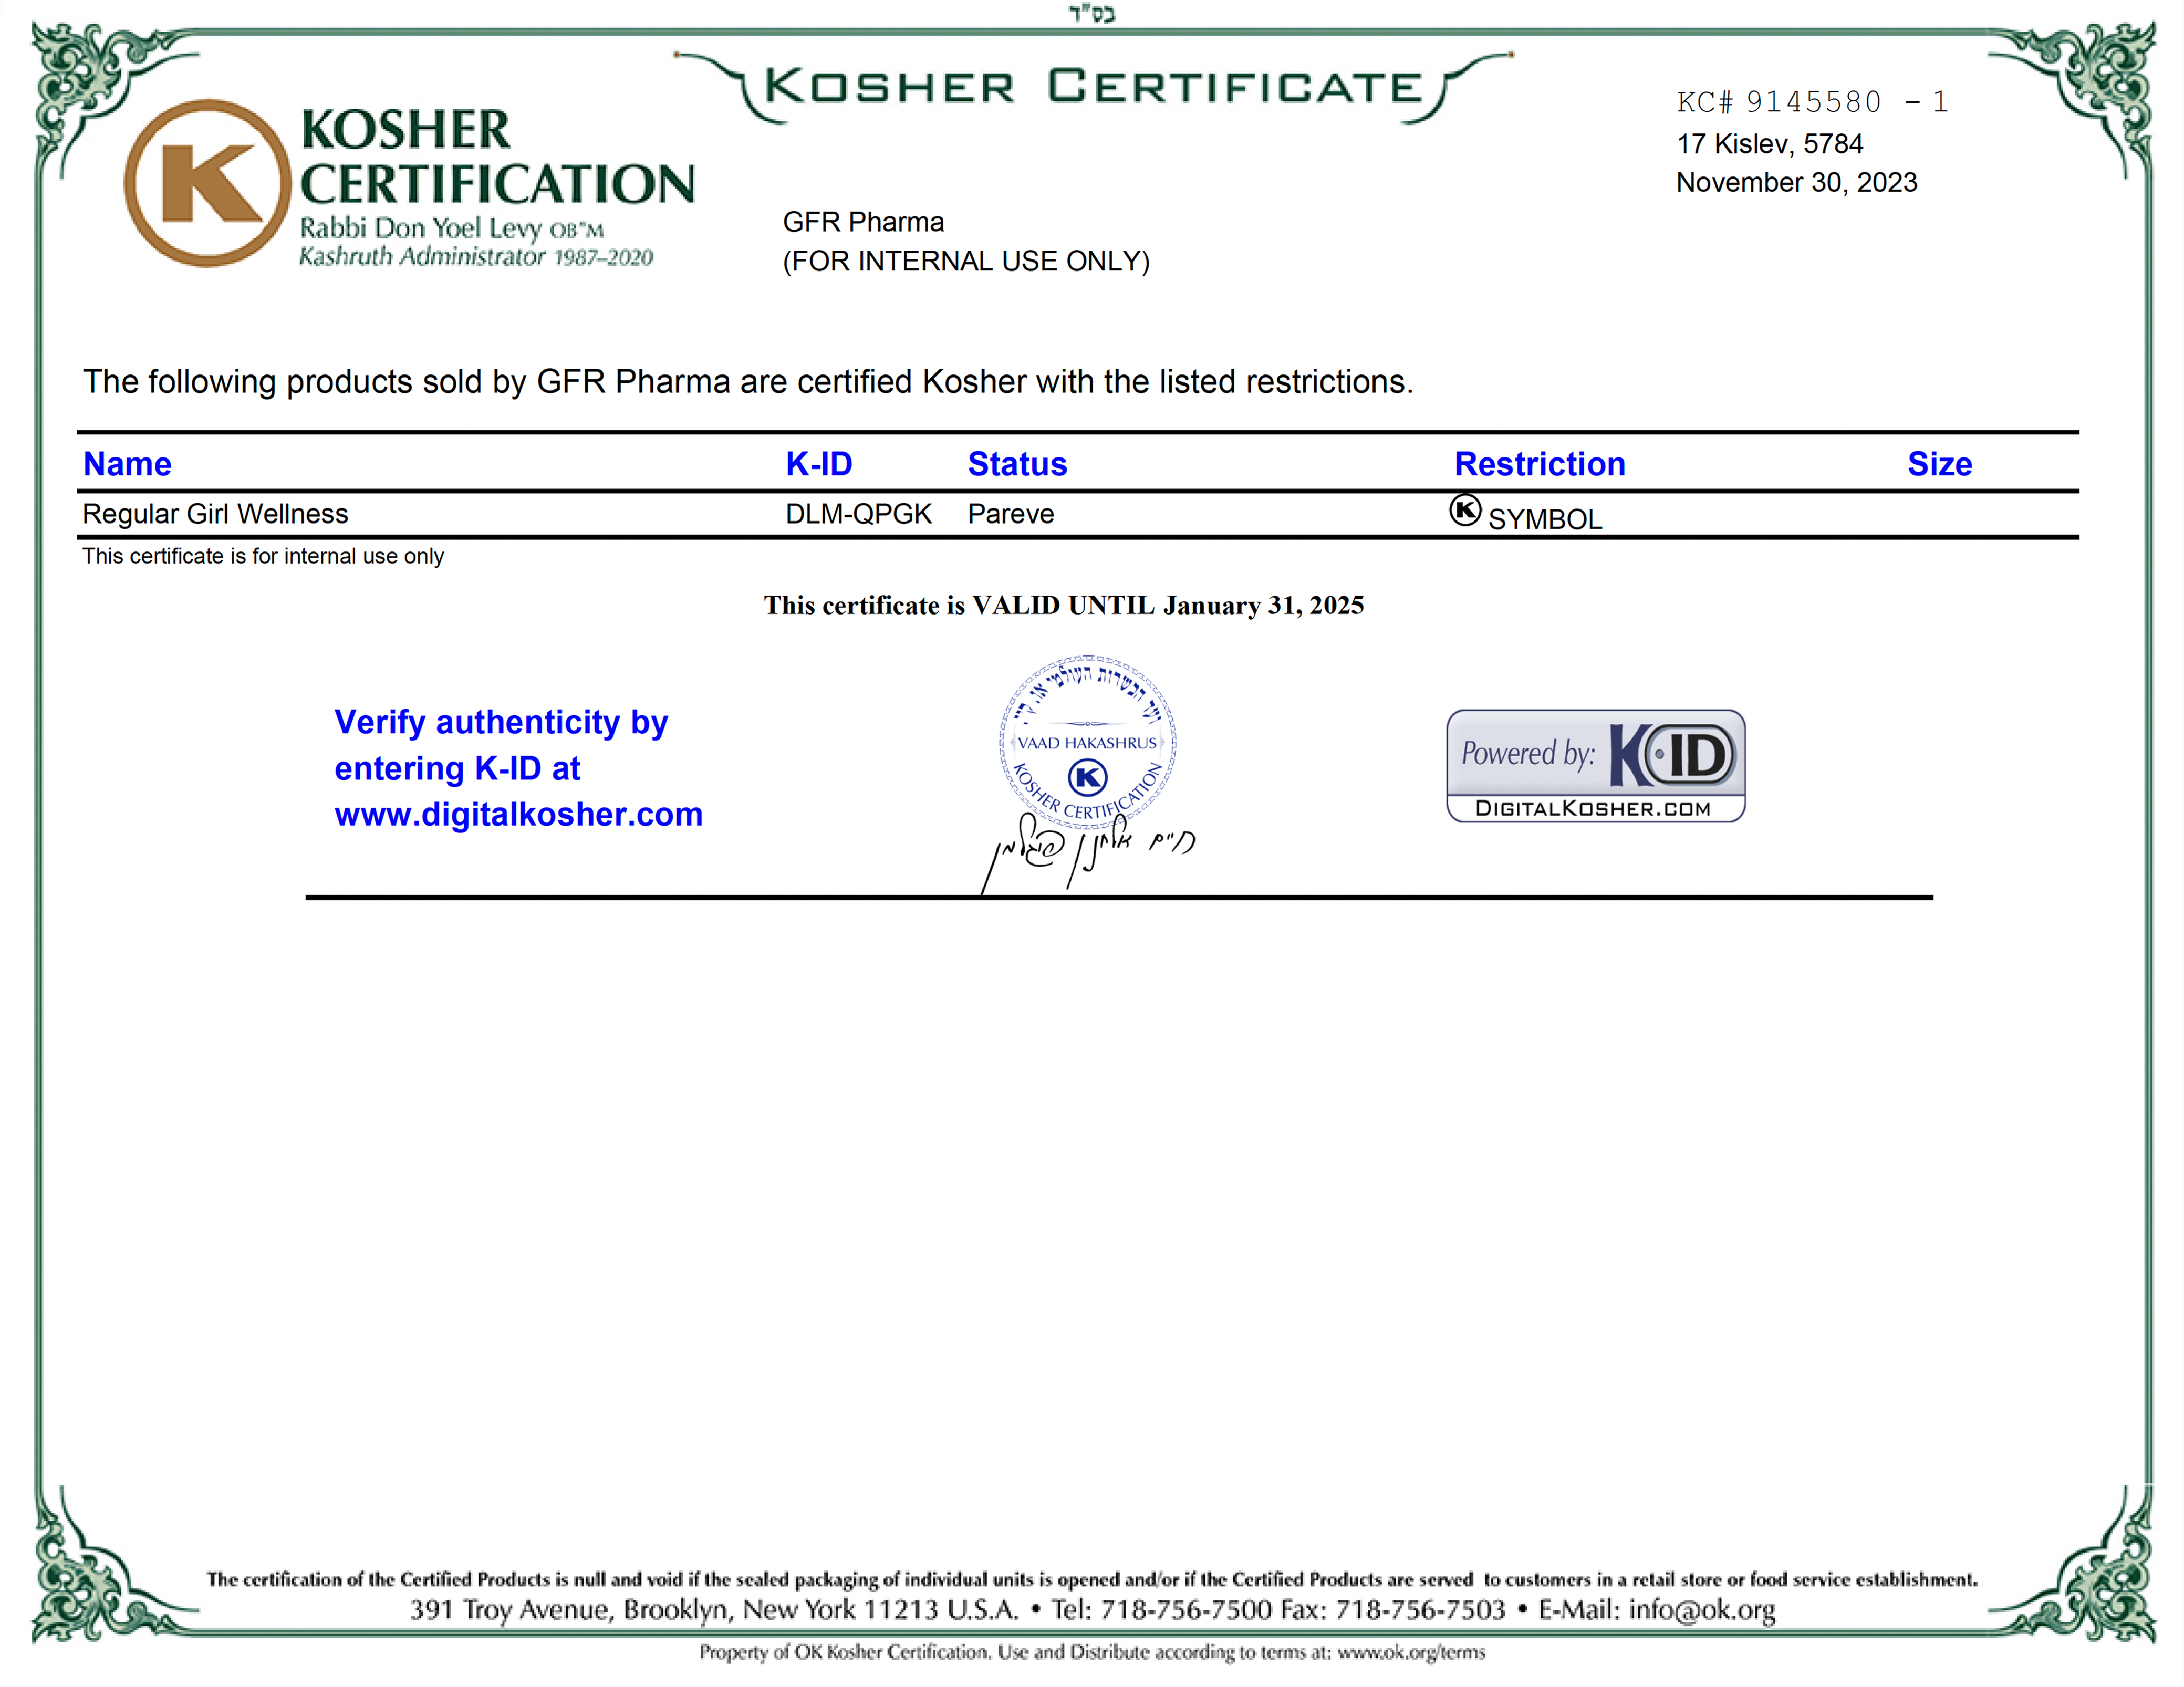 Kosher Certificate for Regular Girl Wellness